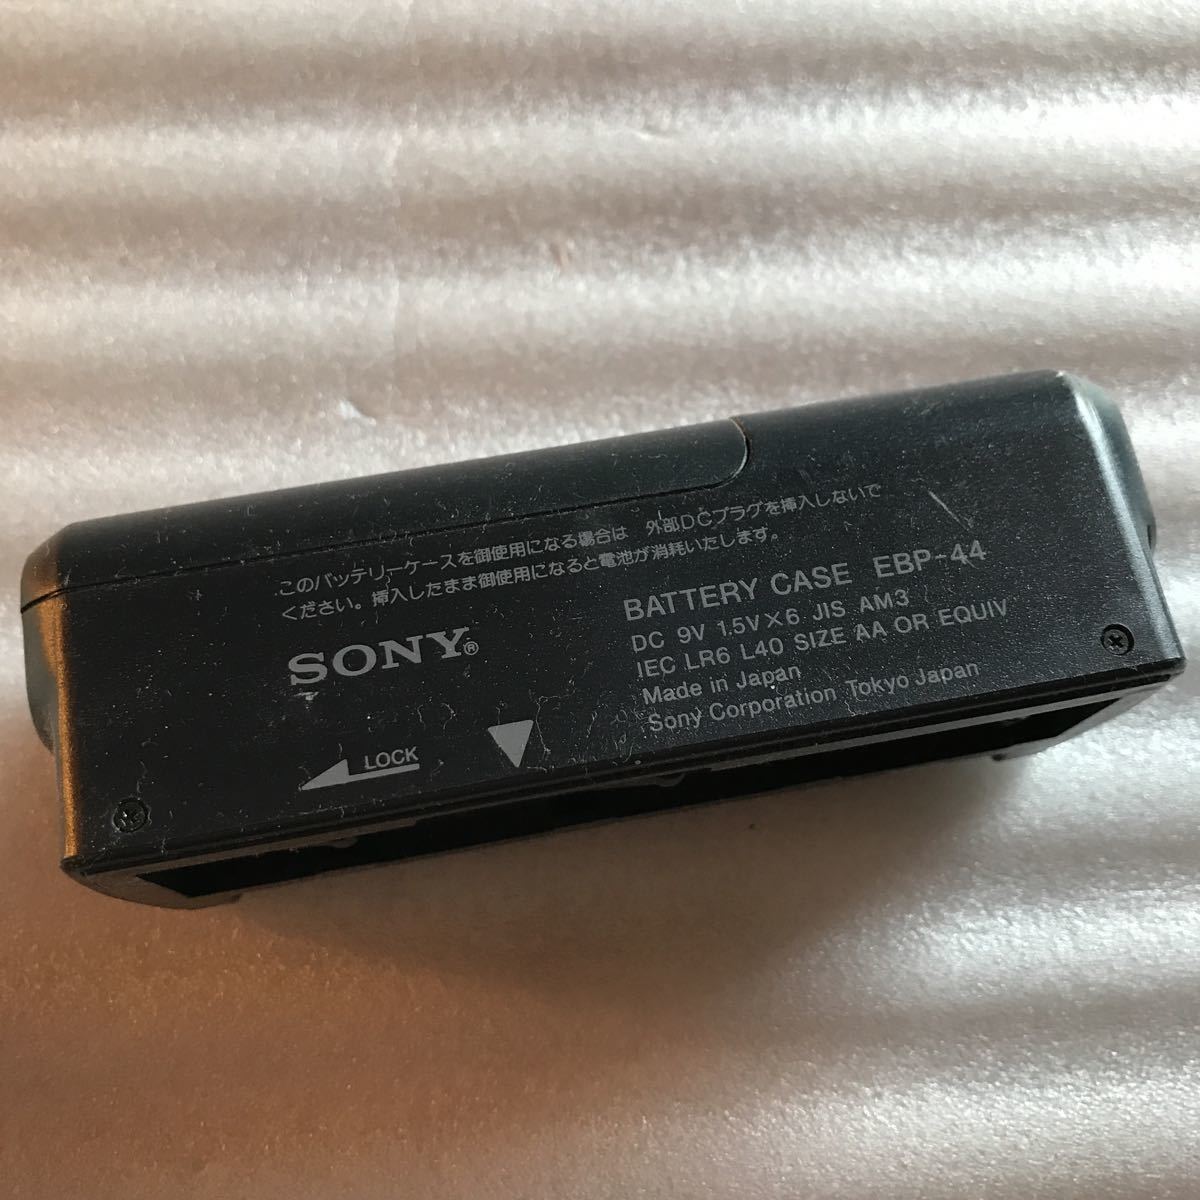  на работоспособность не проверялось  SONY  Sony  батарея   кейс  EBP-44